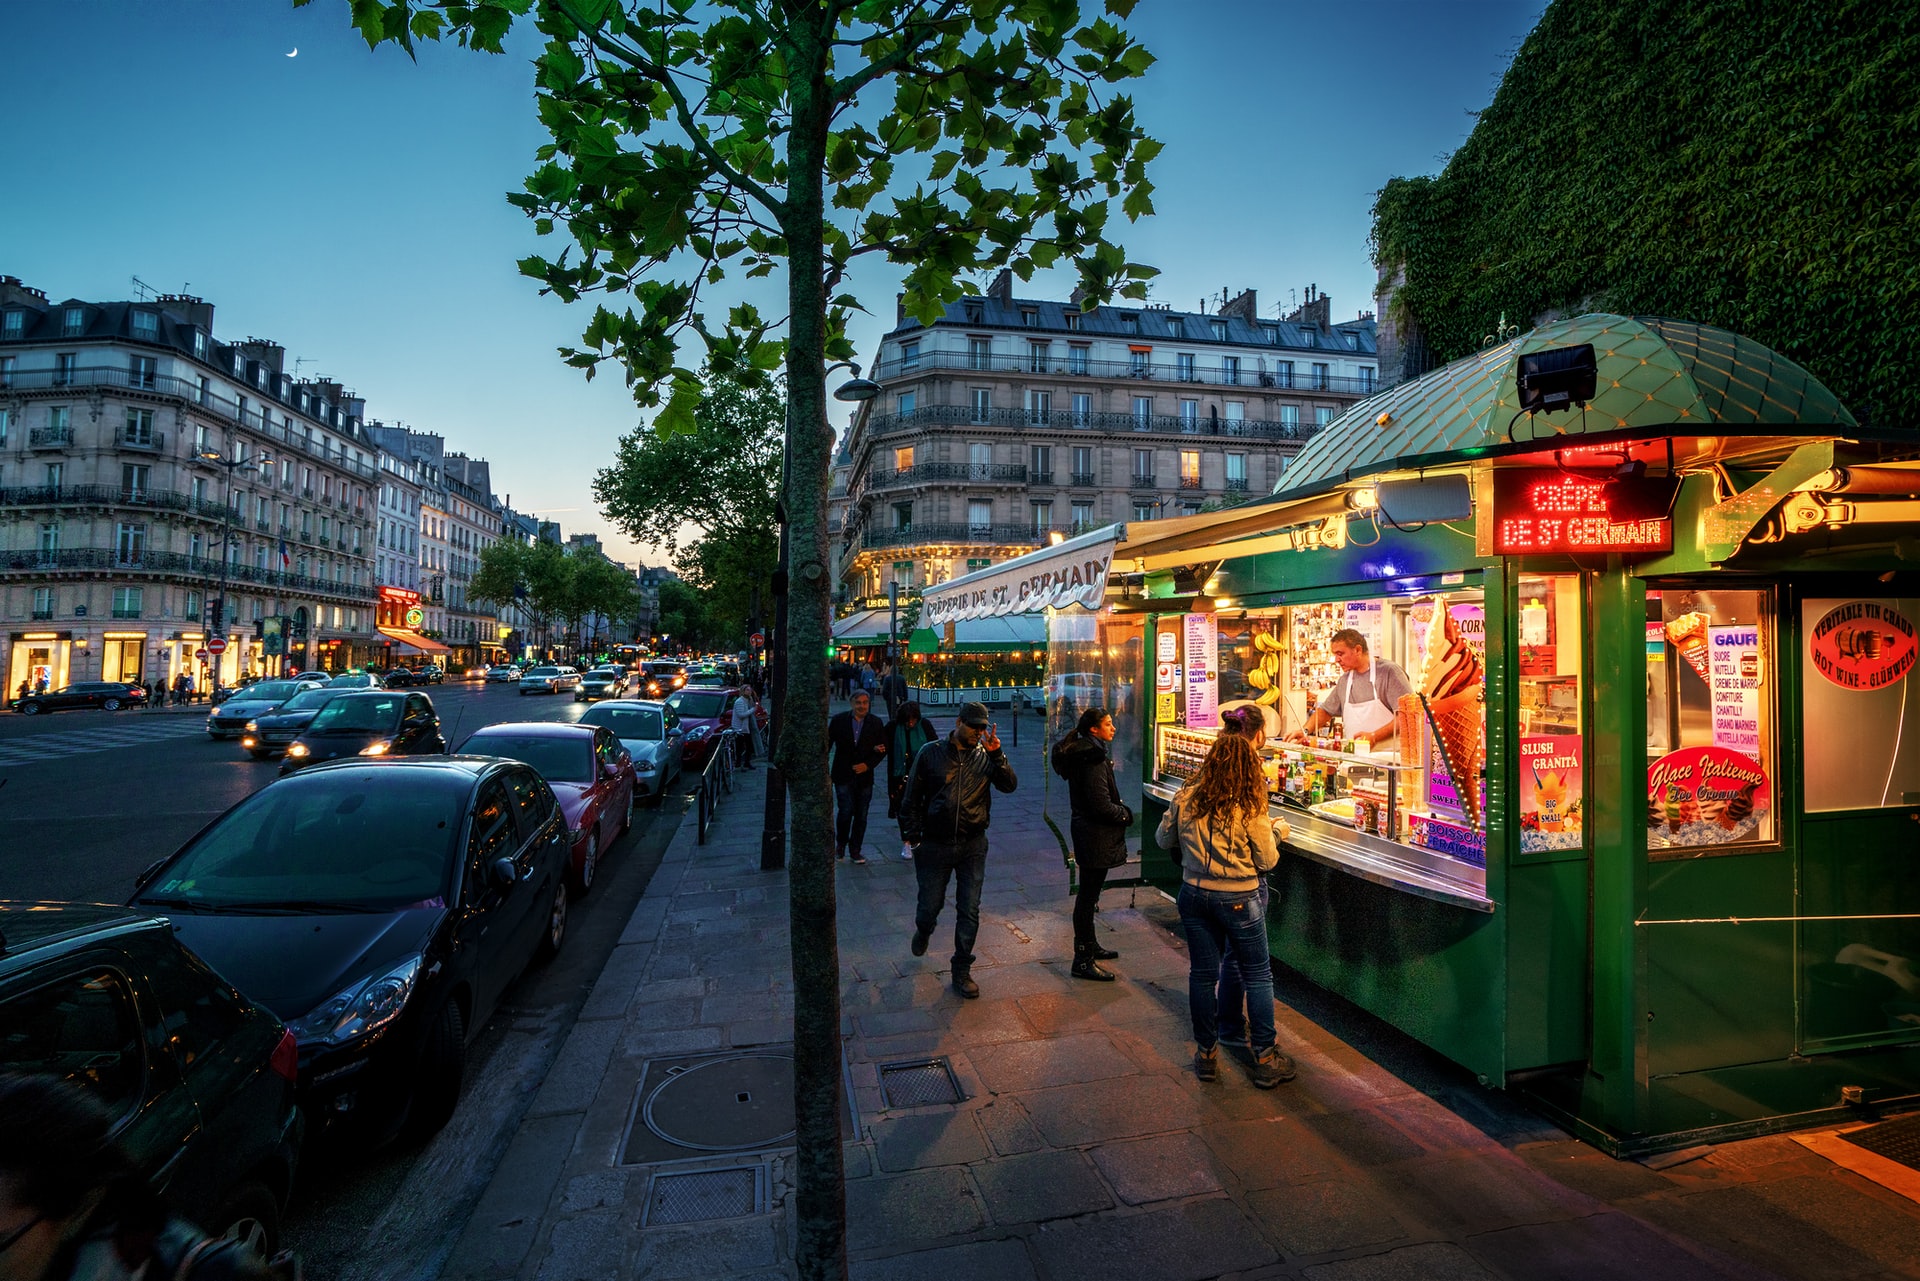 Il 6° arrondissement di Parigi è una zona centrale ricca di affascinanti gemme nascoste.